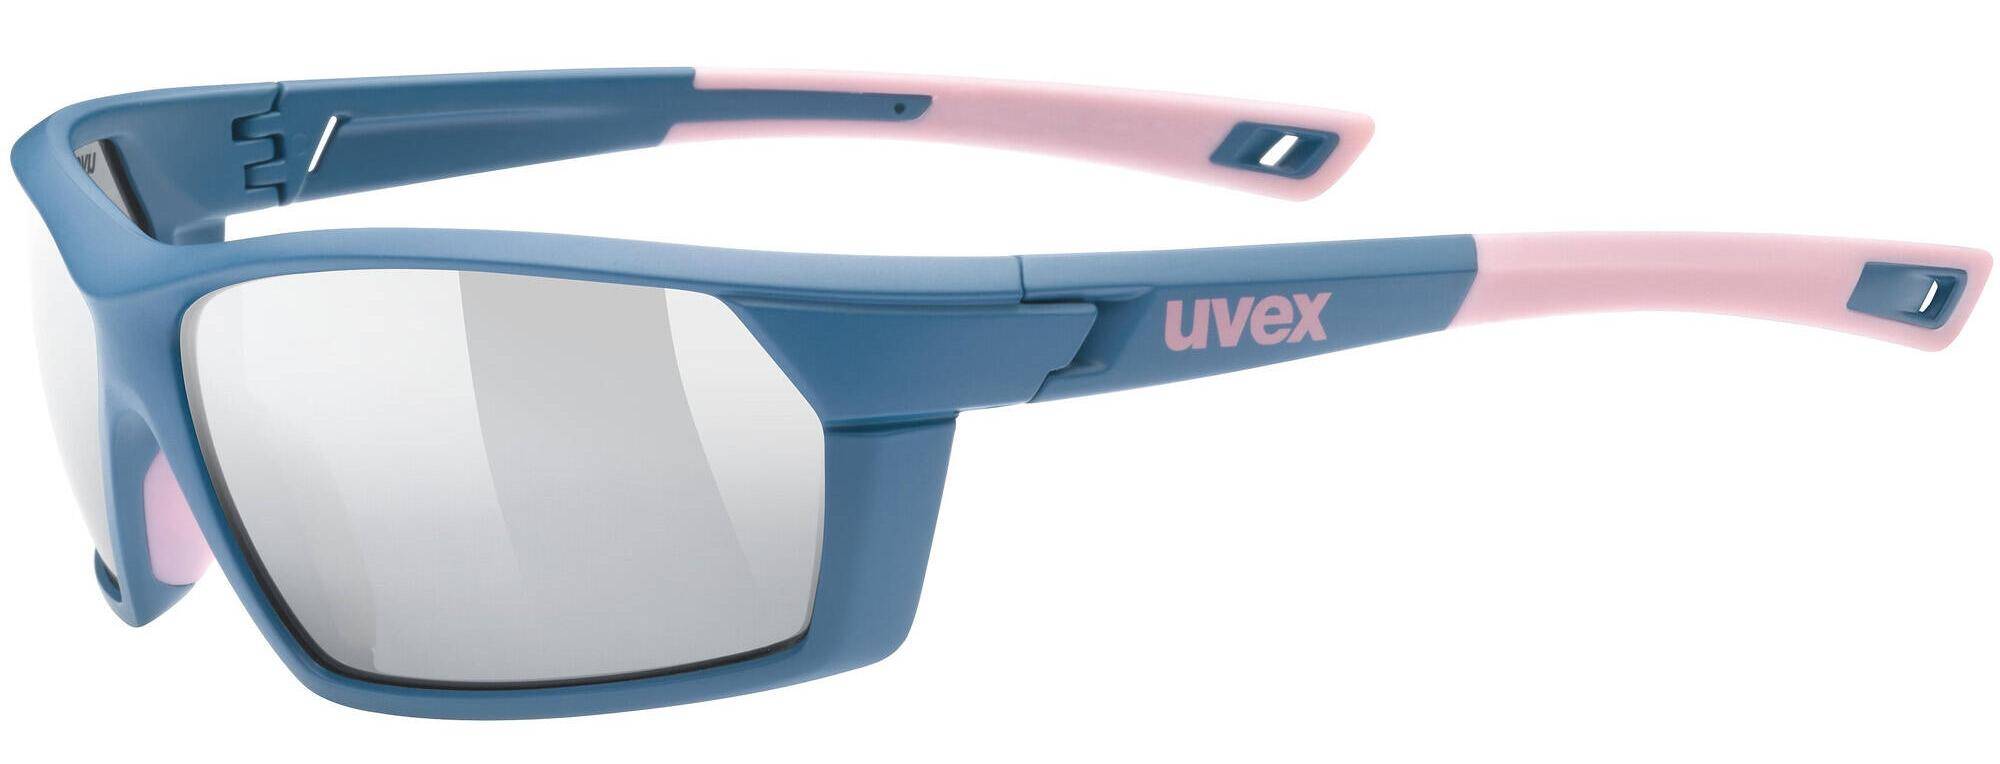 Okulary Uvex Sportstyle 225 blue white (Zdjęcie 3)